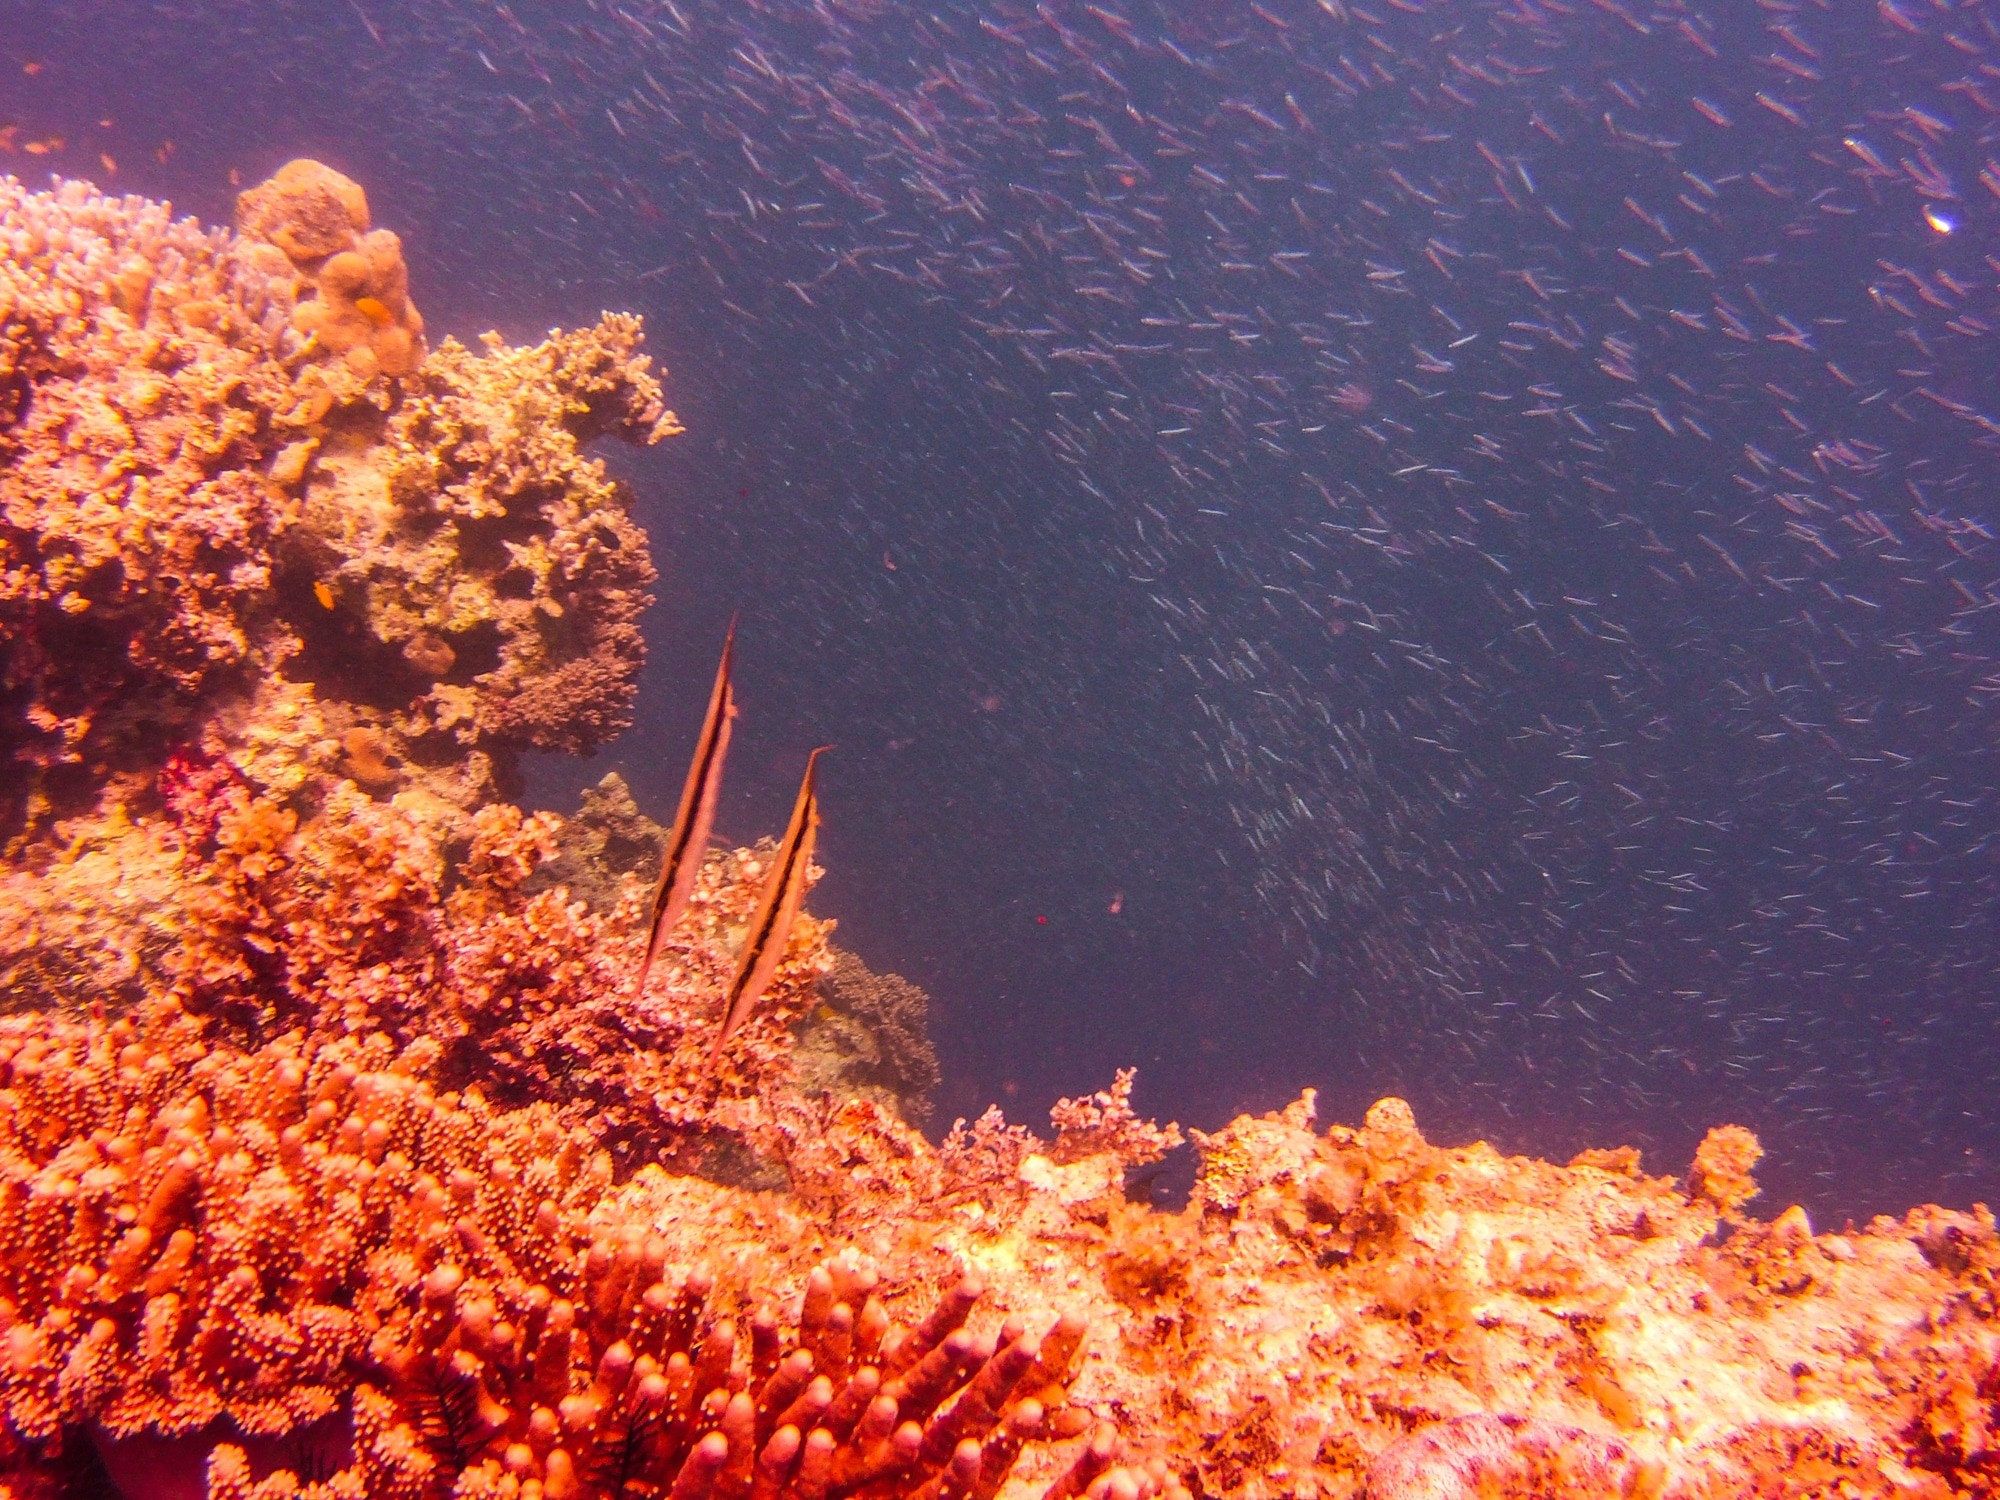 Bohol diving